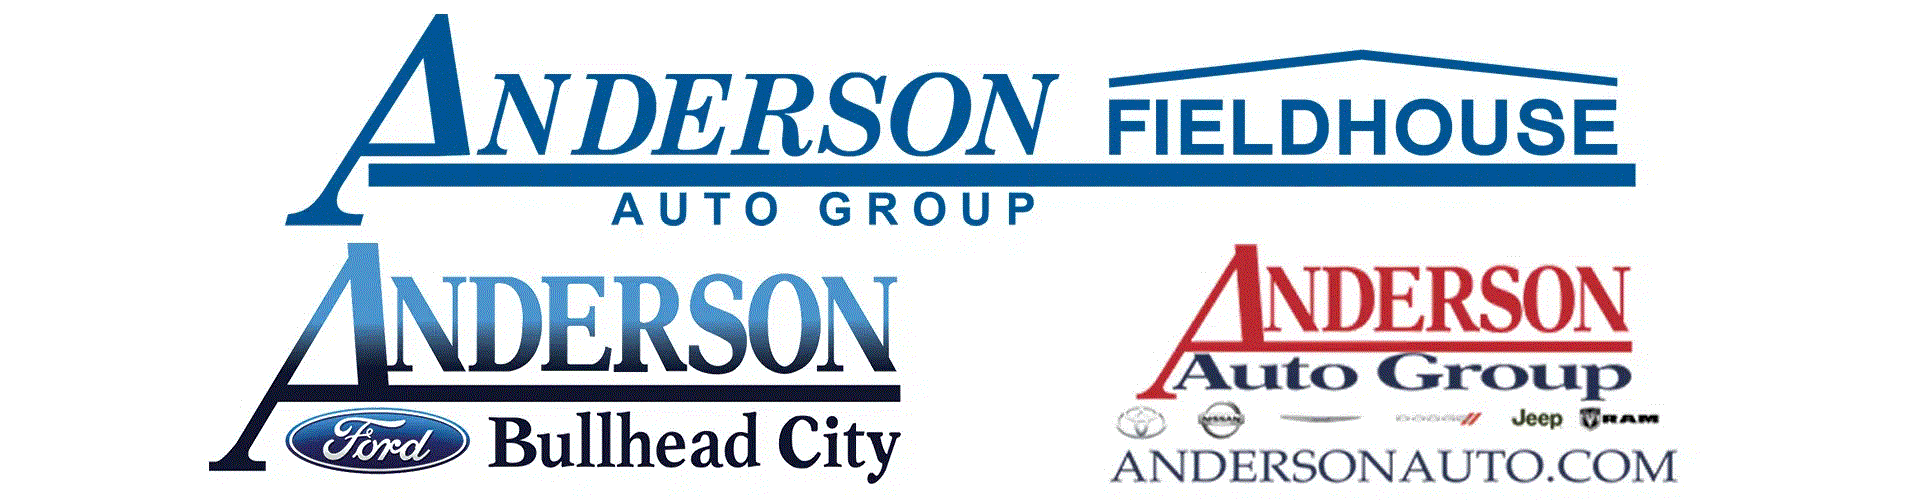 The Anderson Fieldhouse
Bullhead City AZ  